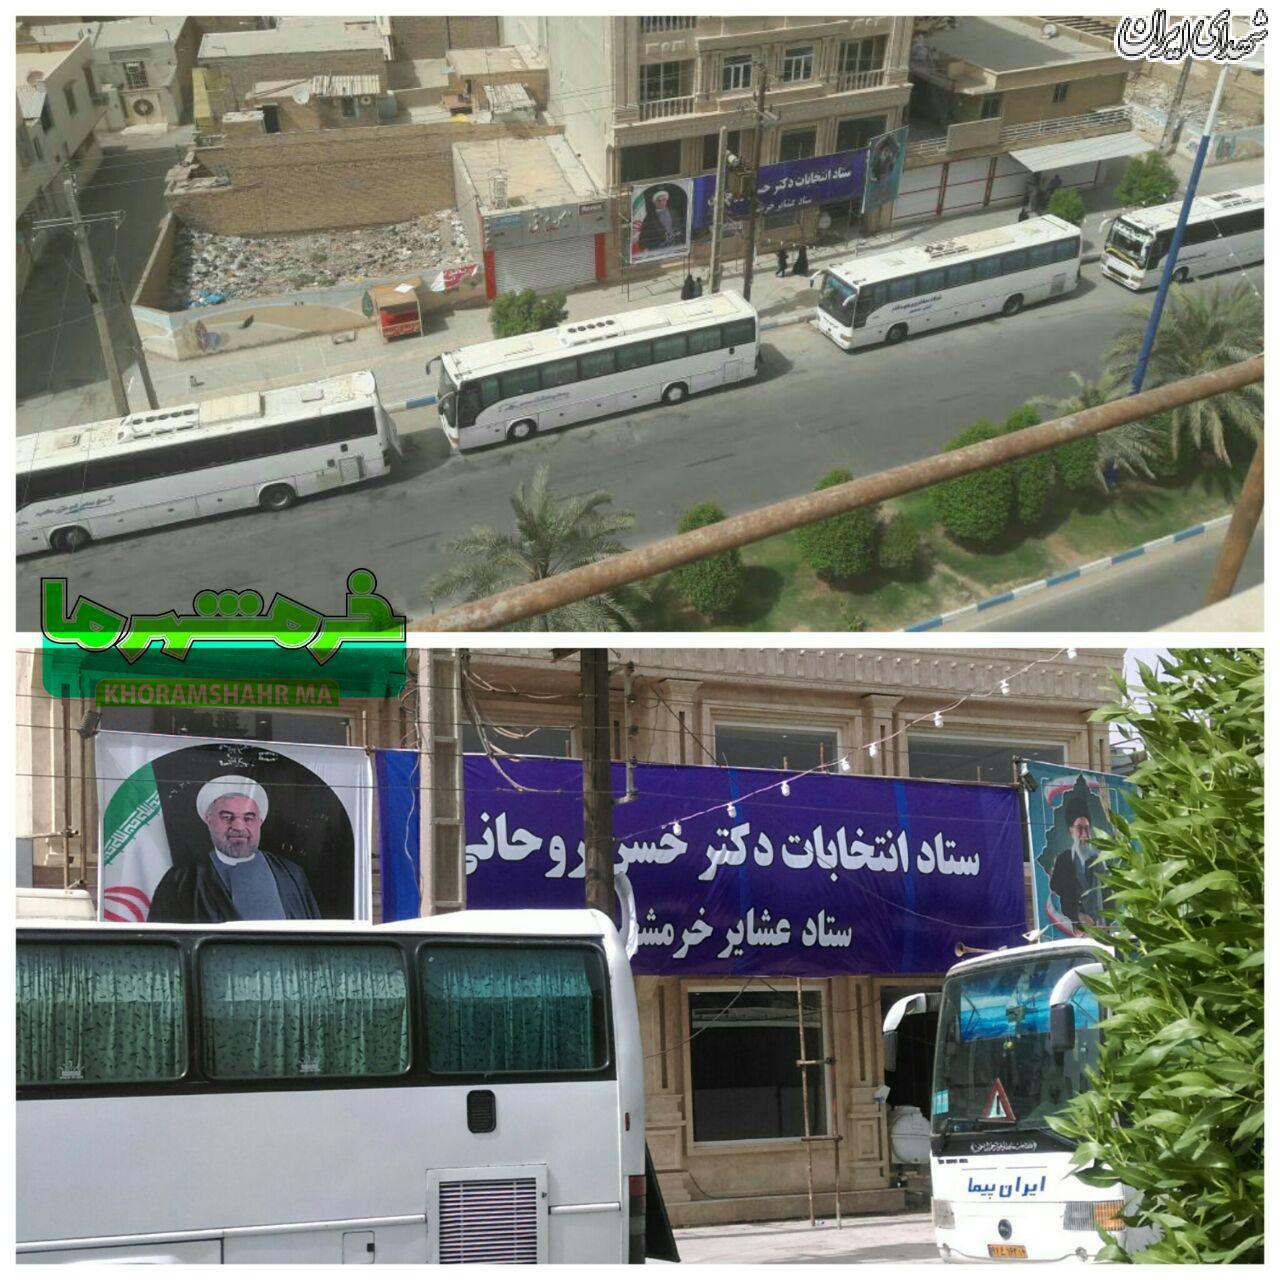 عکس/ ستاد روحانی در حال اتوبوسی جمع کردن مردم!